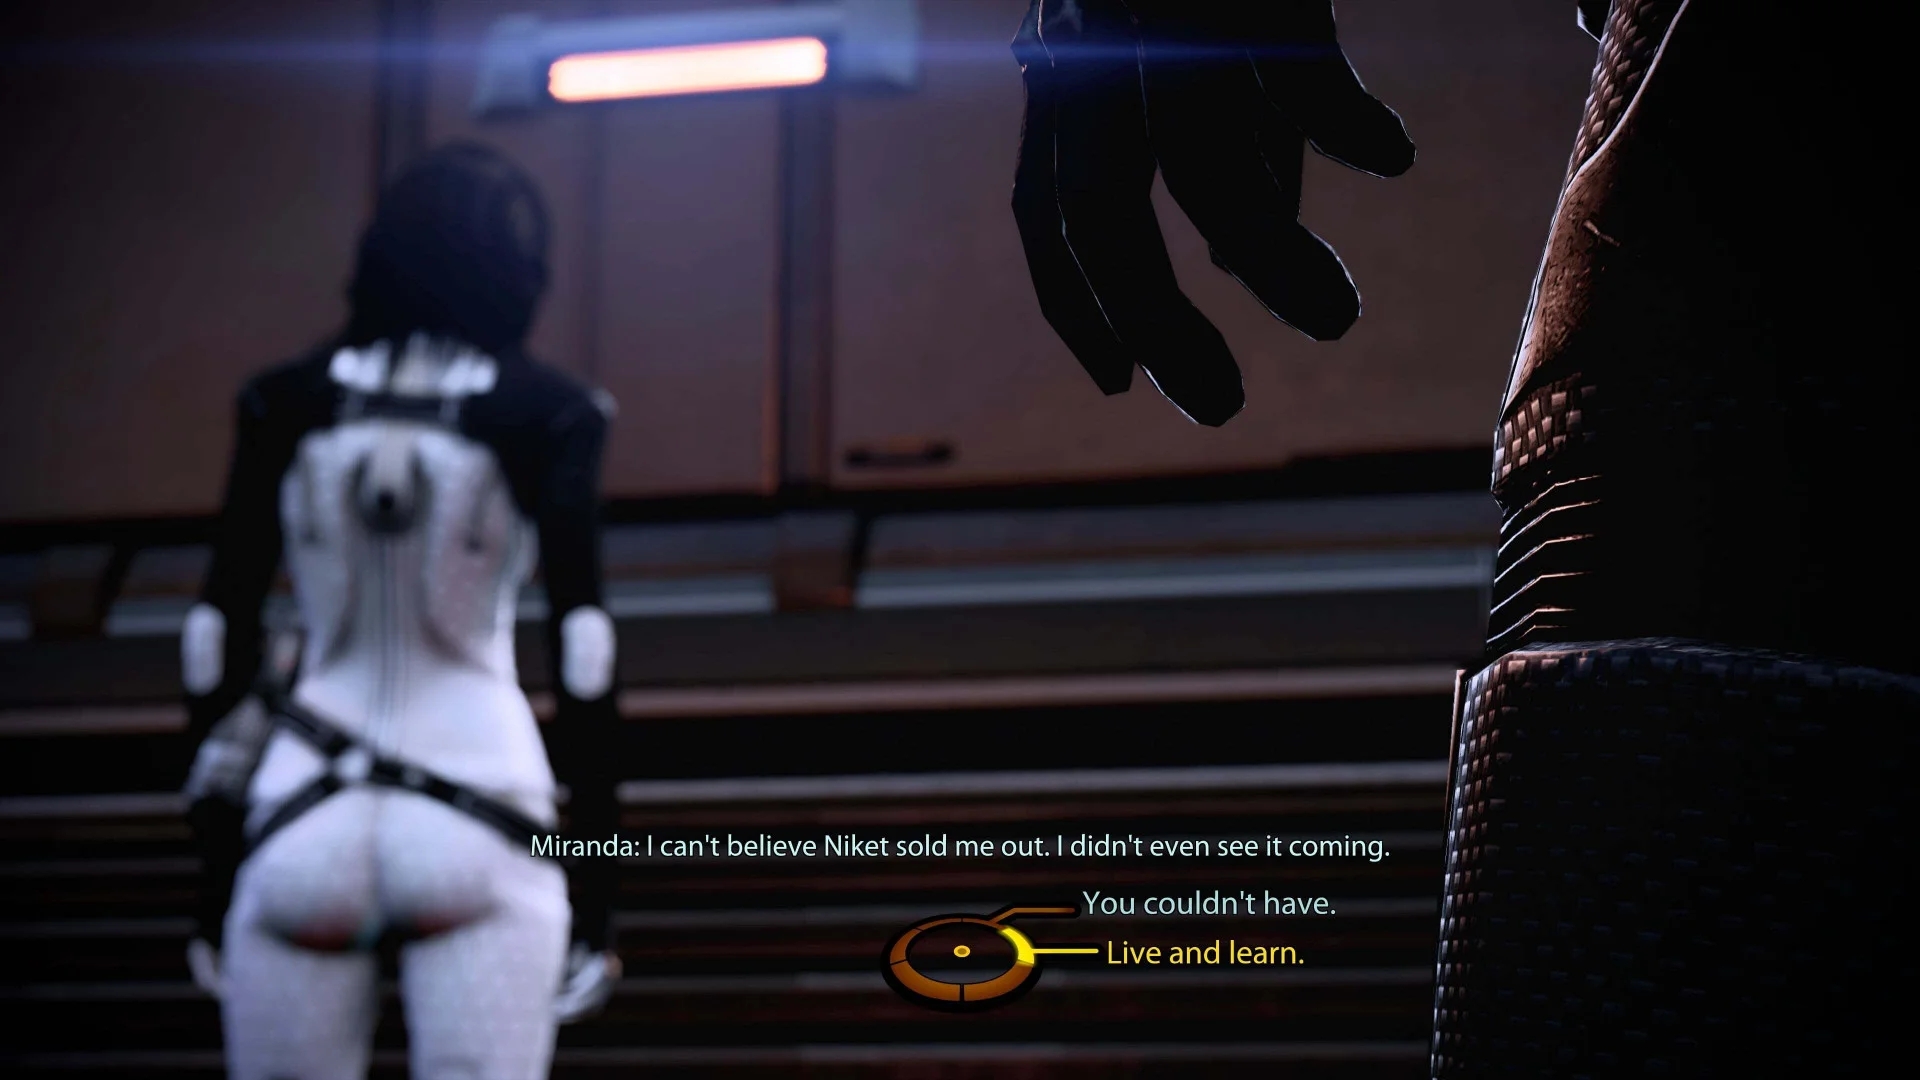 СМИ провели расследование о сценах с попой Миранды в Mass Effect Legendary Edition - фото 6